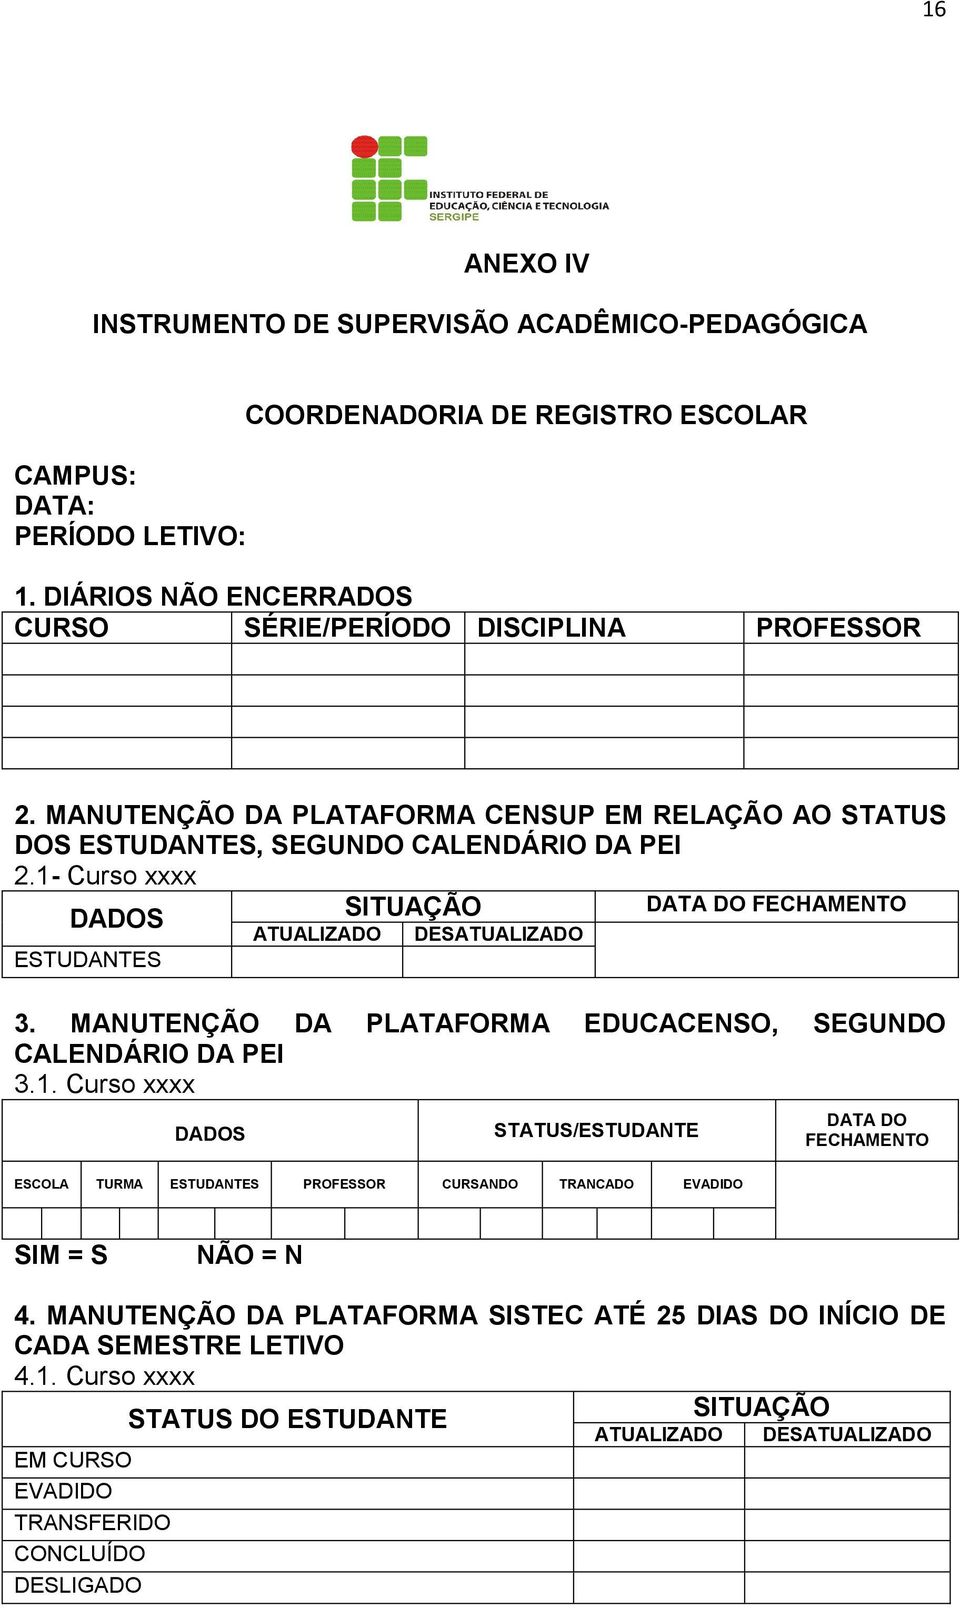 MANUTENÇÃO DA PLATAFORMA EDUCACENSO, SEGUNDO CALENDÁRIO DA PEI 3.1.